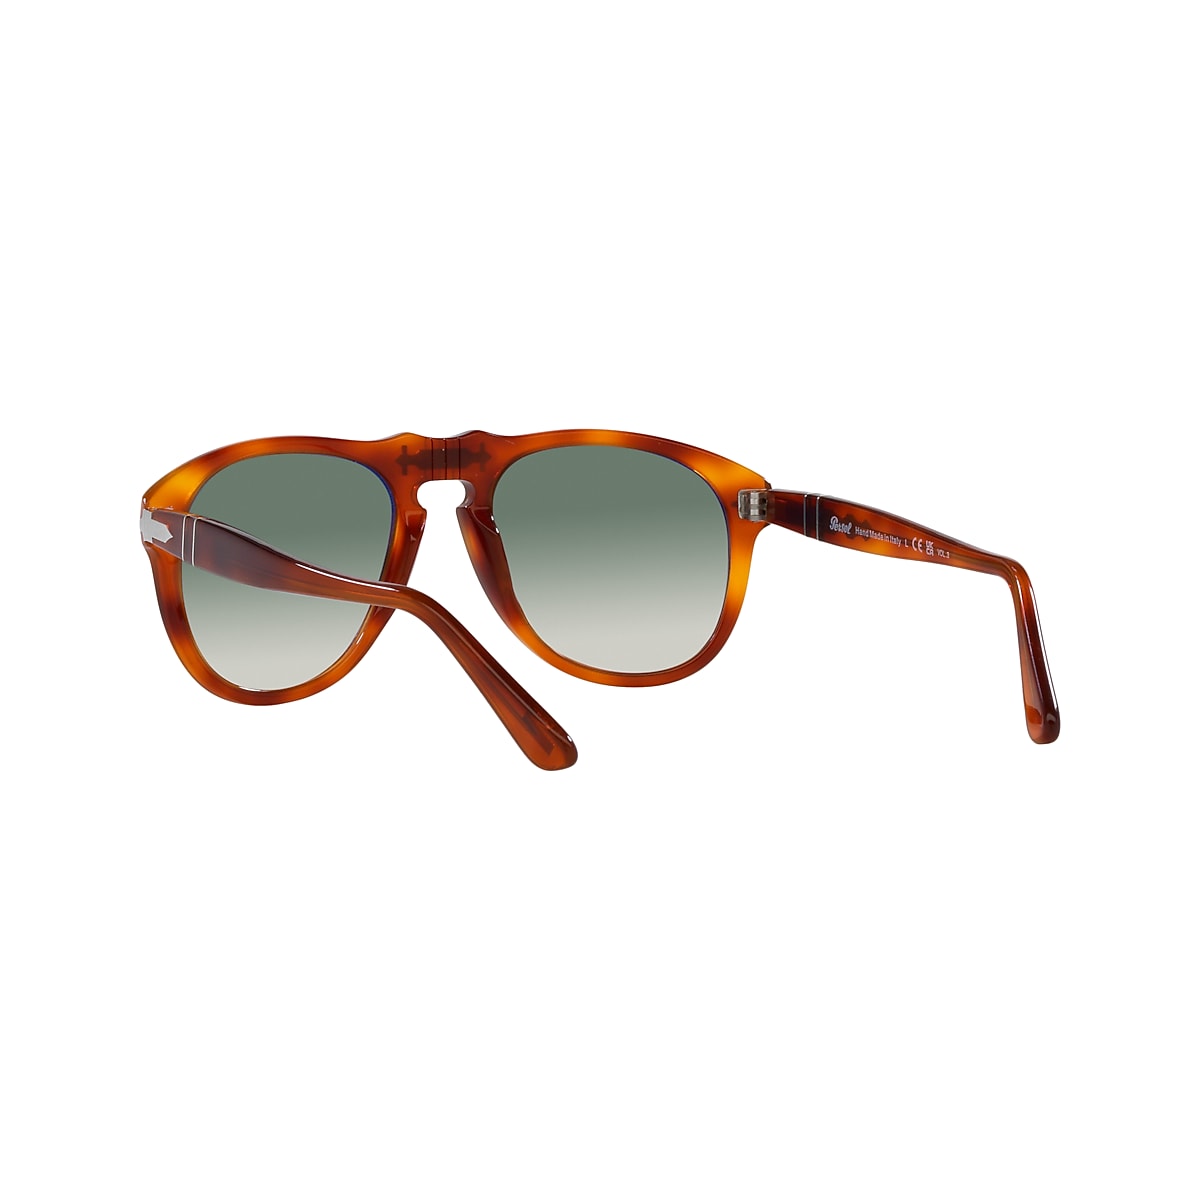 Persol 649 - Exclusive Sunglasses in Terra Di Siena | Persol 